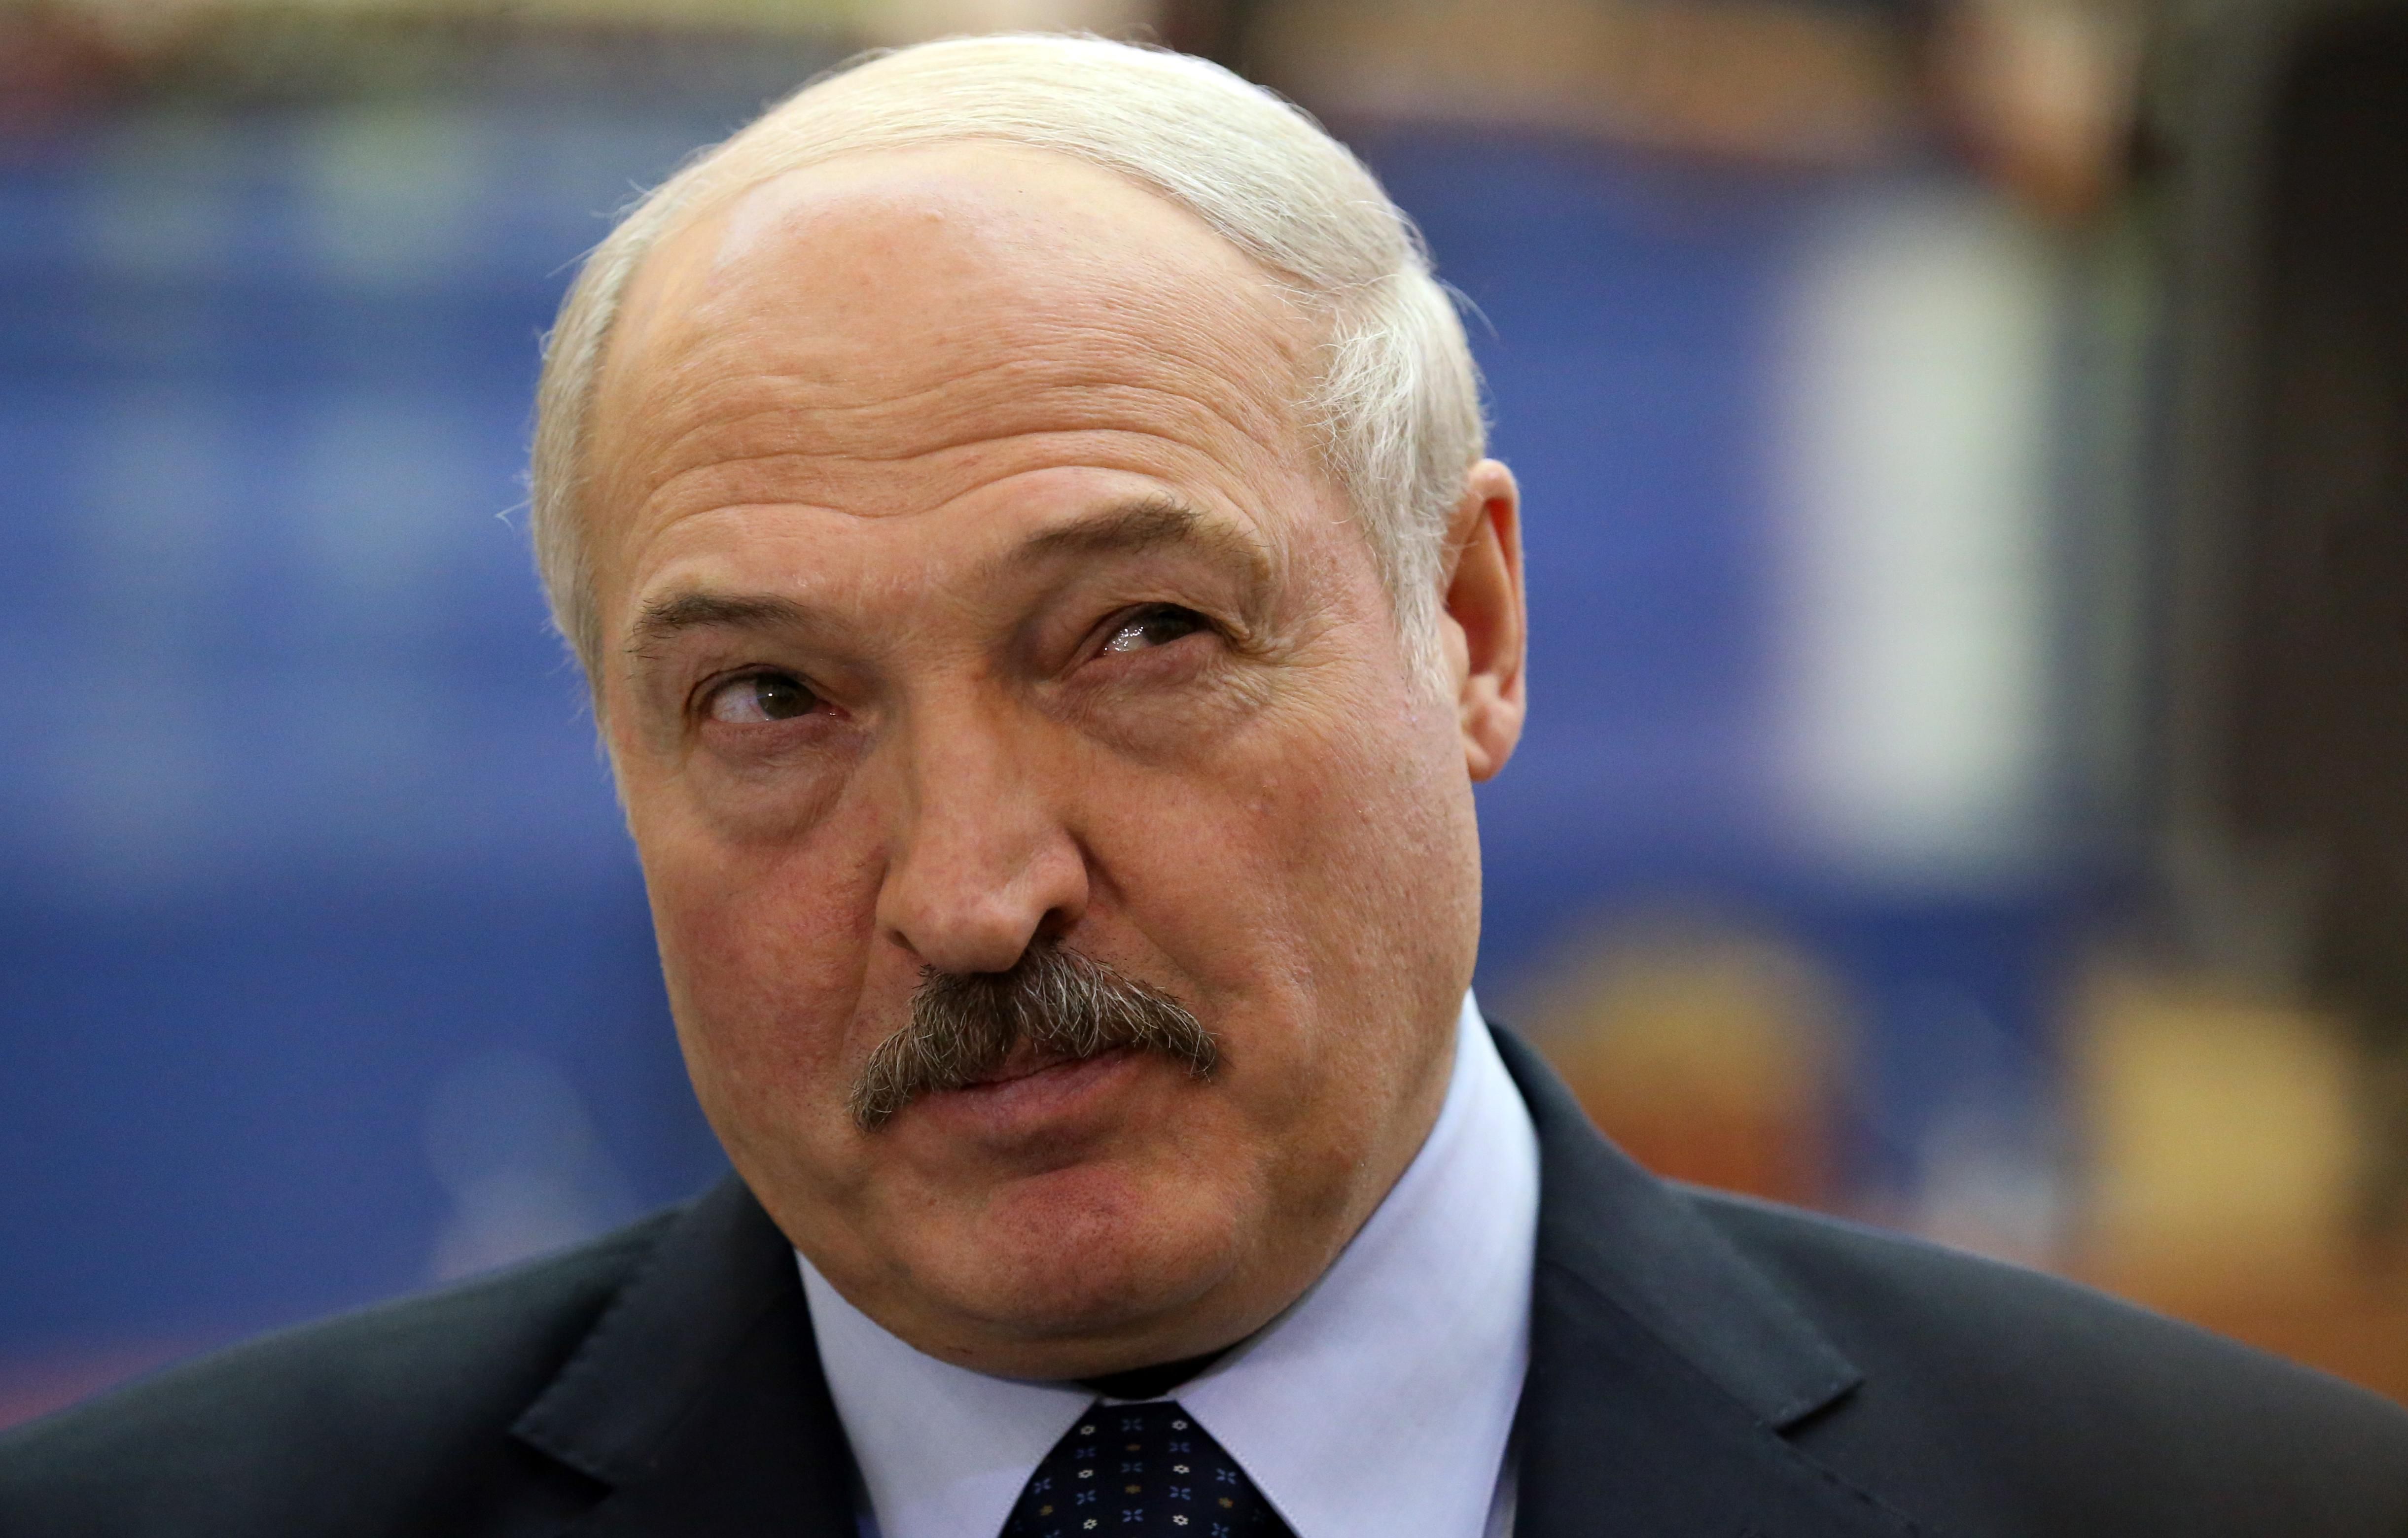 Можуть без проблем зупинити постачання палива Україні, – економістка про погрози Лукашенка - нафта новини - 24 Канал